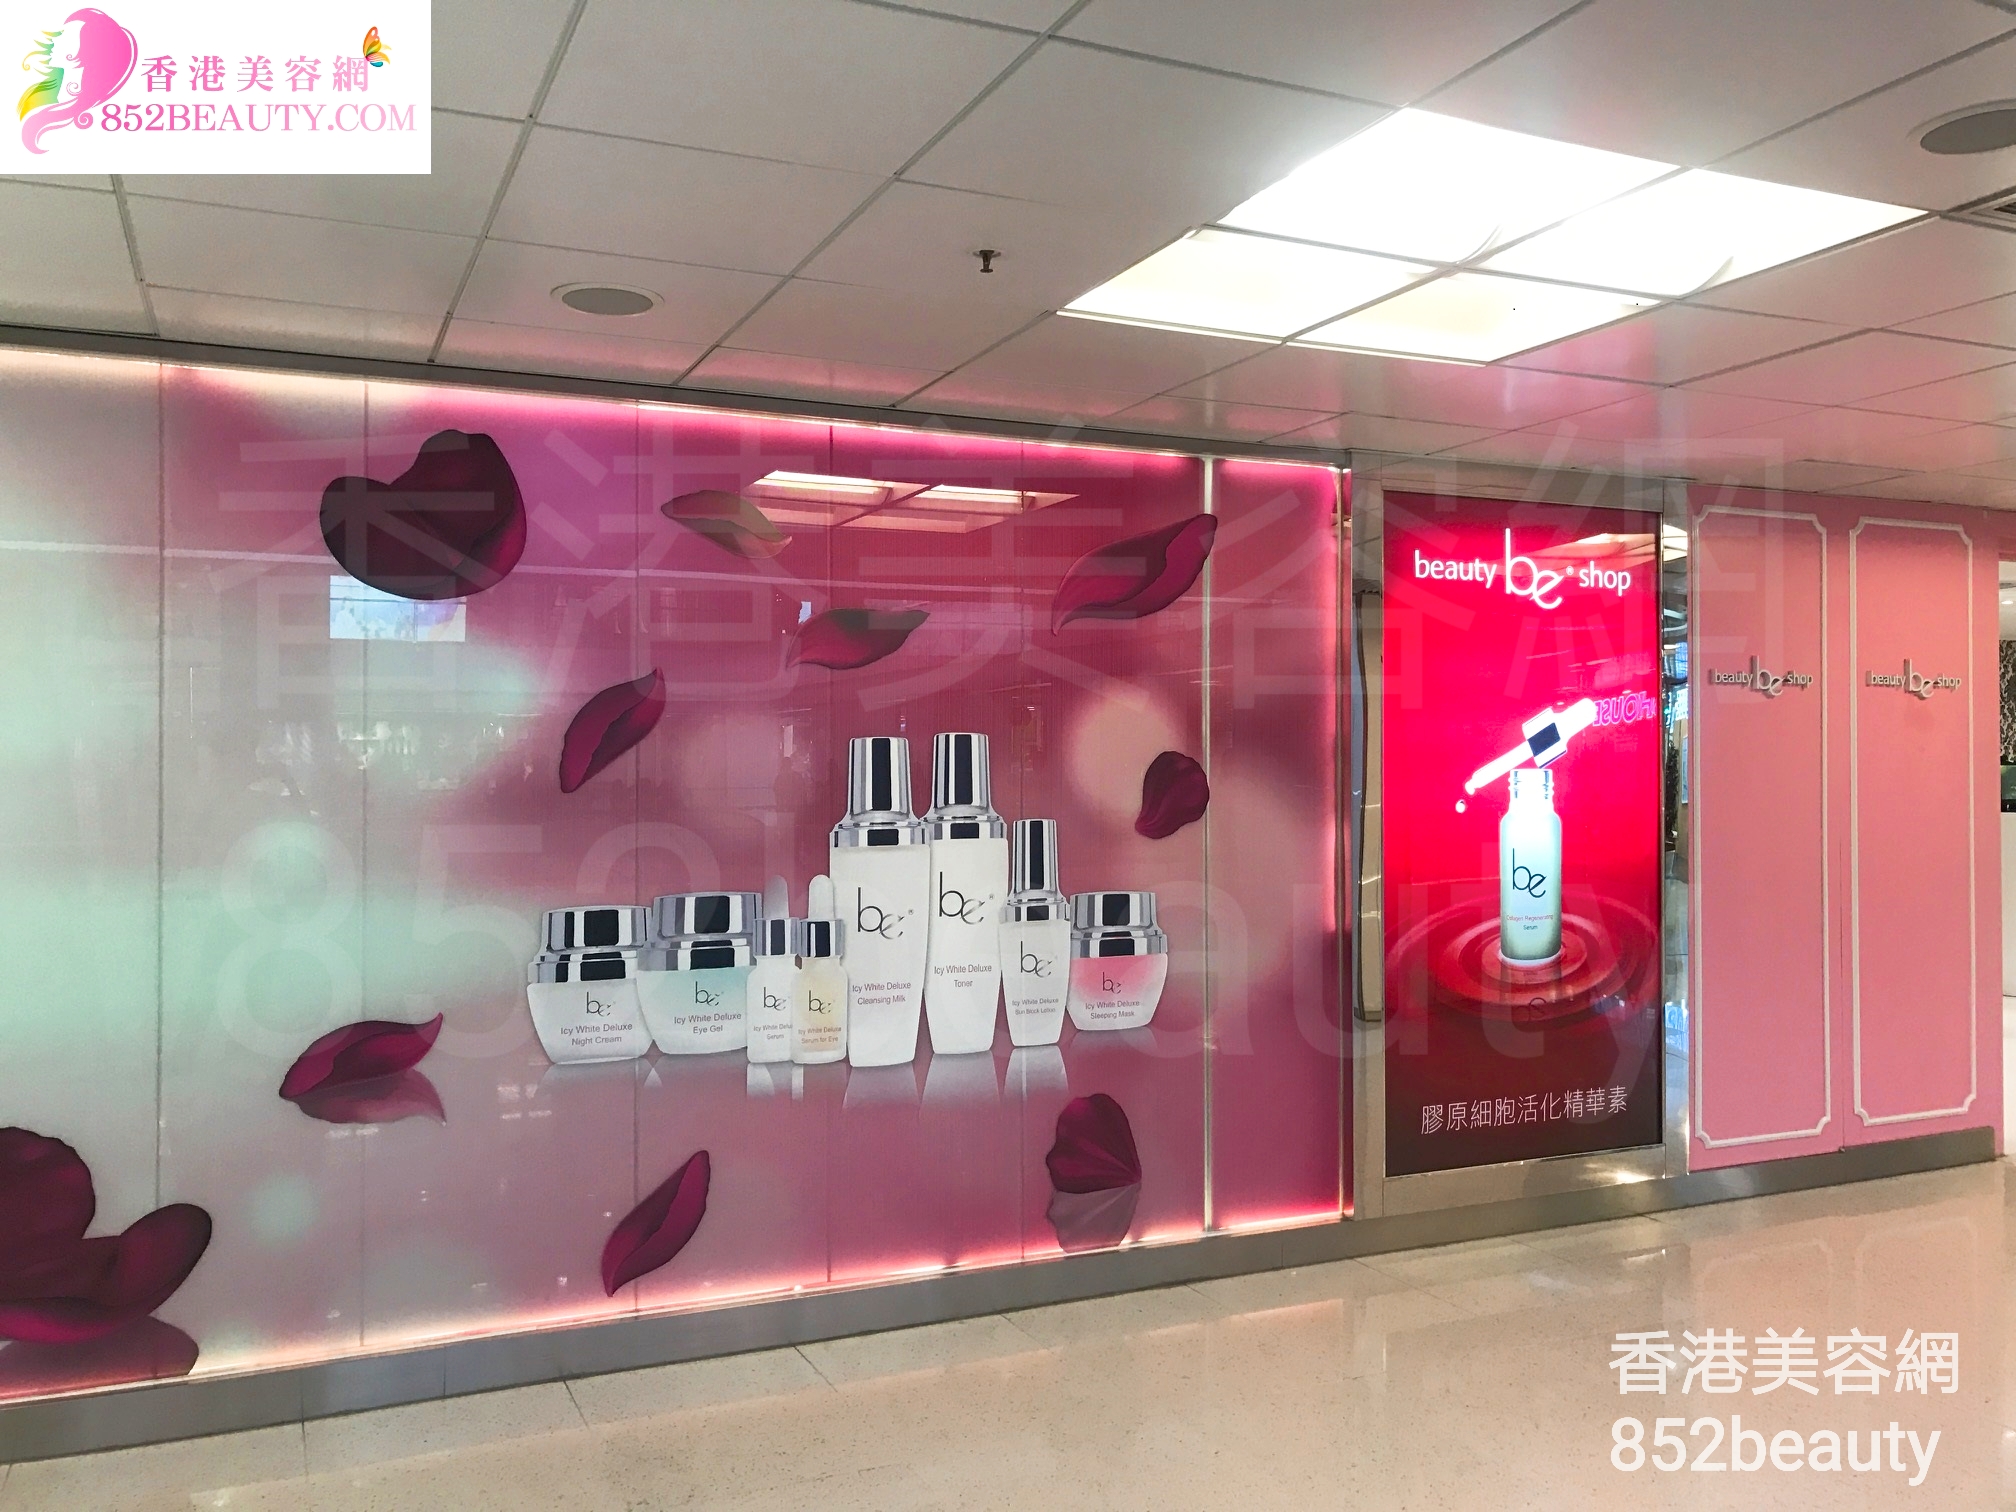 手脚护理: be beauty shop (大埔廣場)